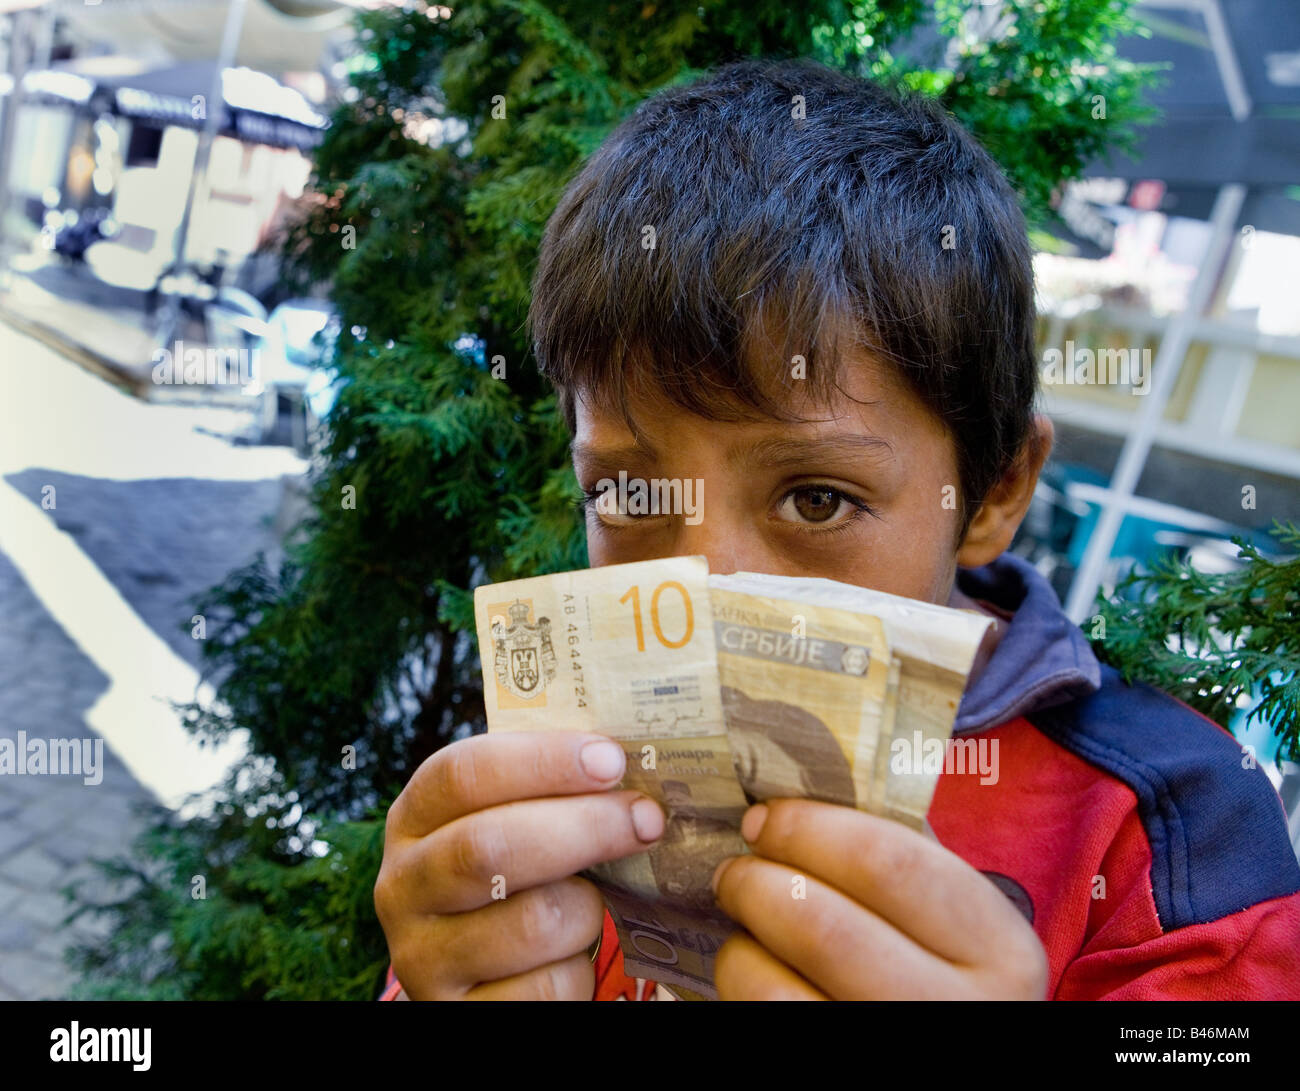 Roma oder Zigeuner junge Bettler in den Straßen von Nis Serbien mit etwas von dem Geld sammelte er durch Betteln Stockfoto